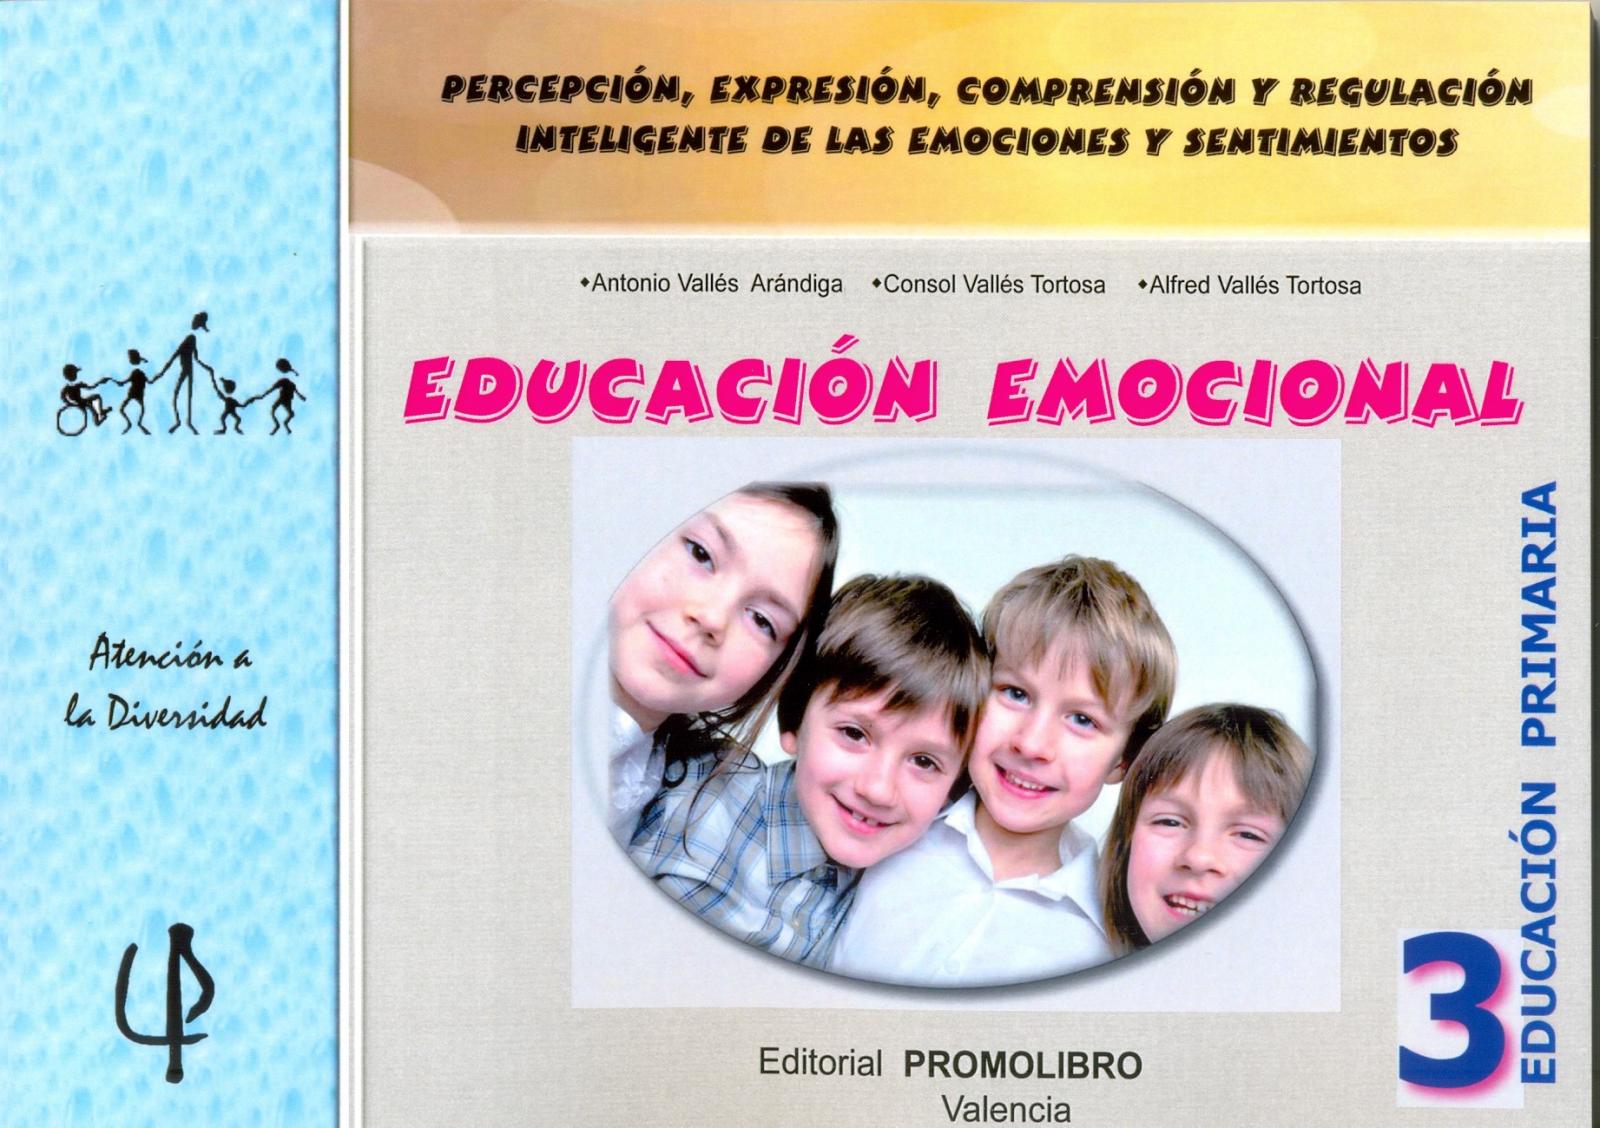 220.- EDUCACIÓN EMOCIONAL 3. Percepción, expresión, comprensión y regulación inteligente de las emociones y sentimientos. 3º EDUCACIÓN PRIMARIA